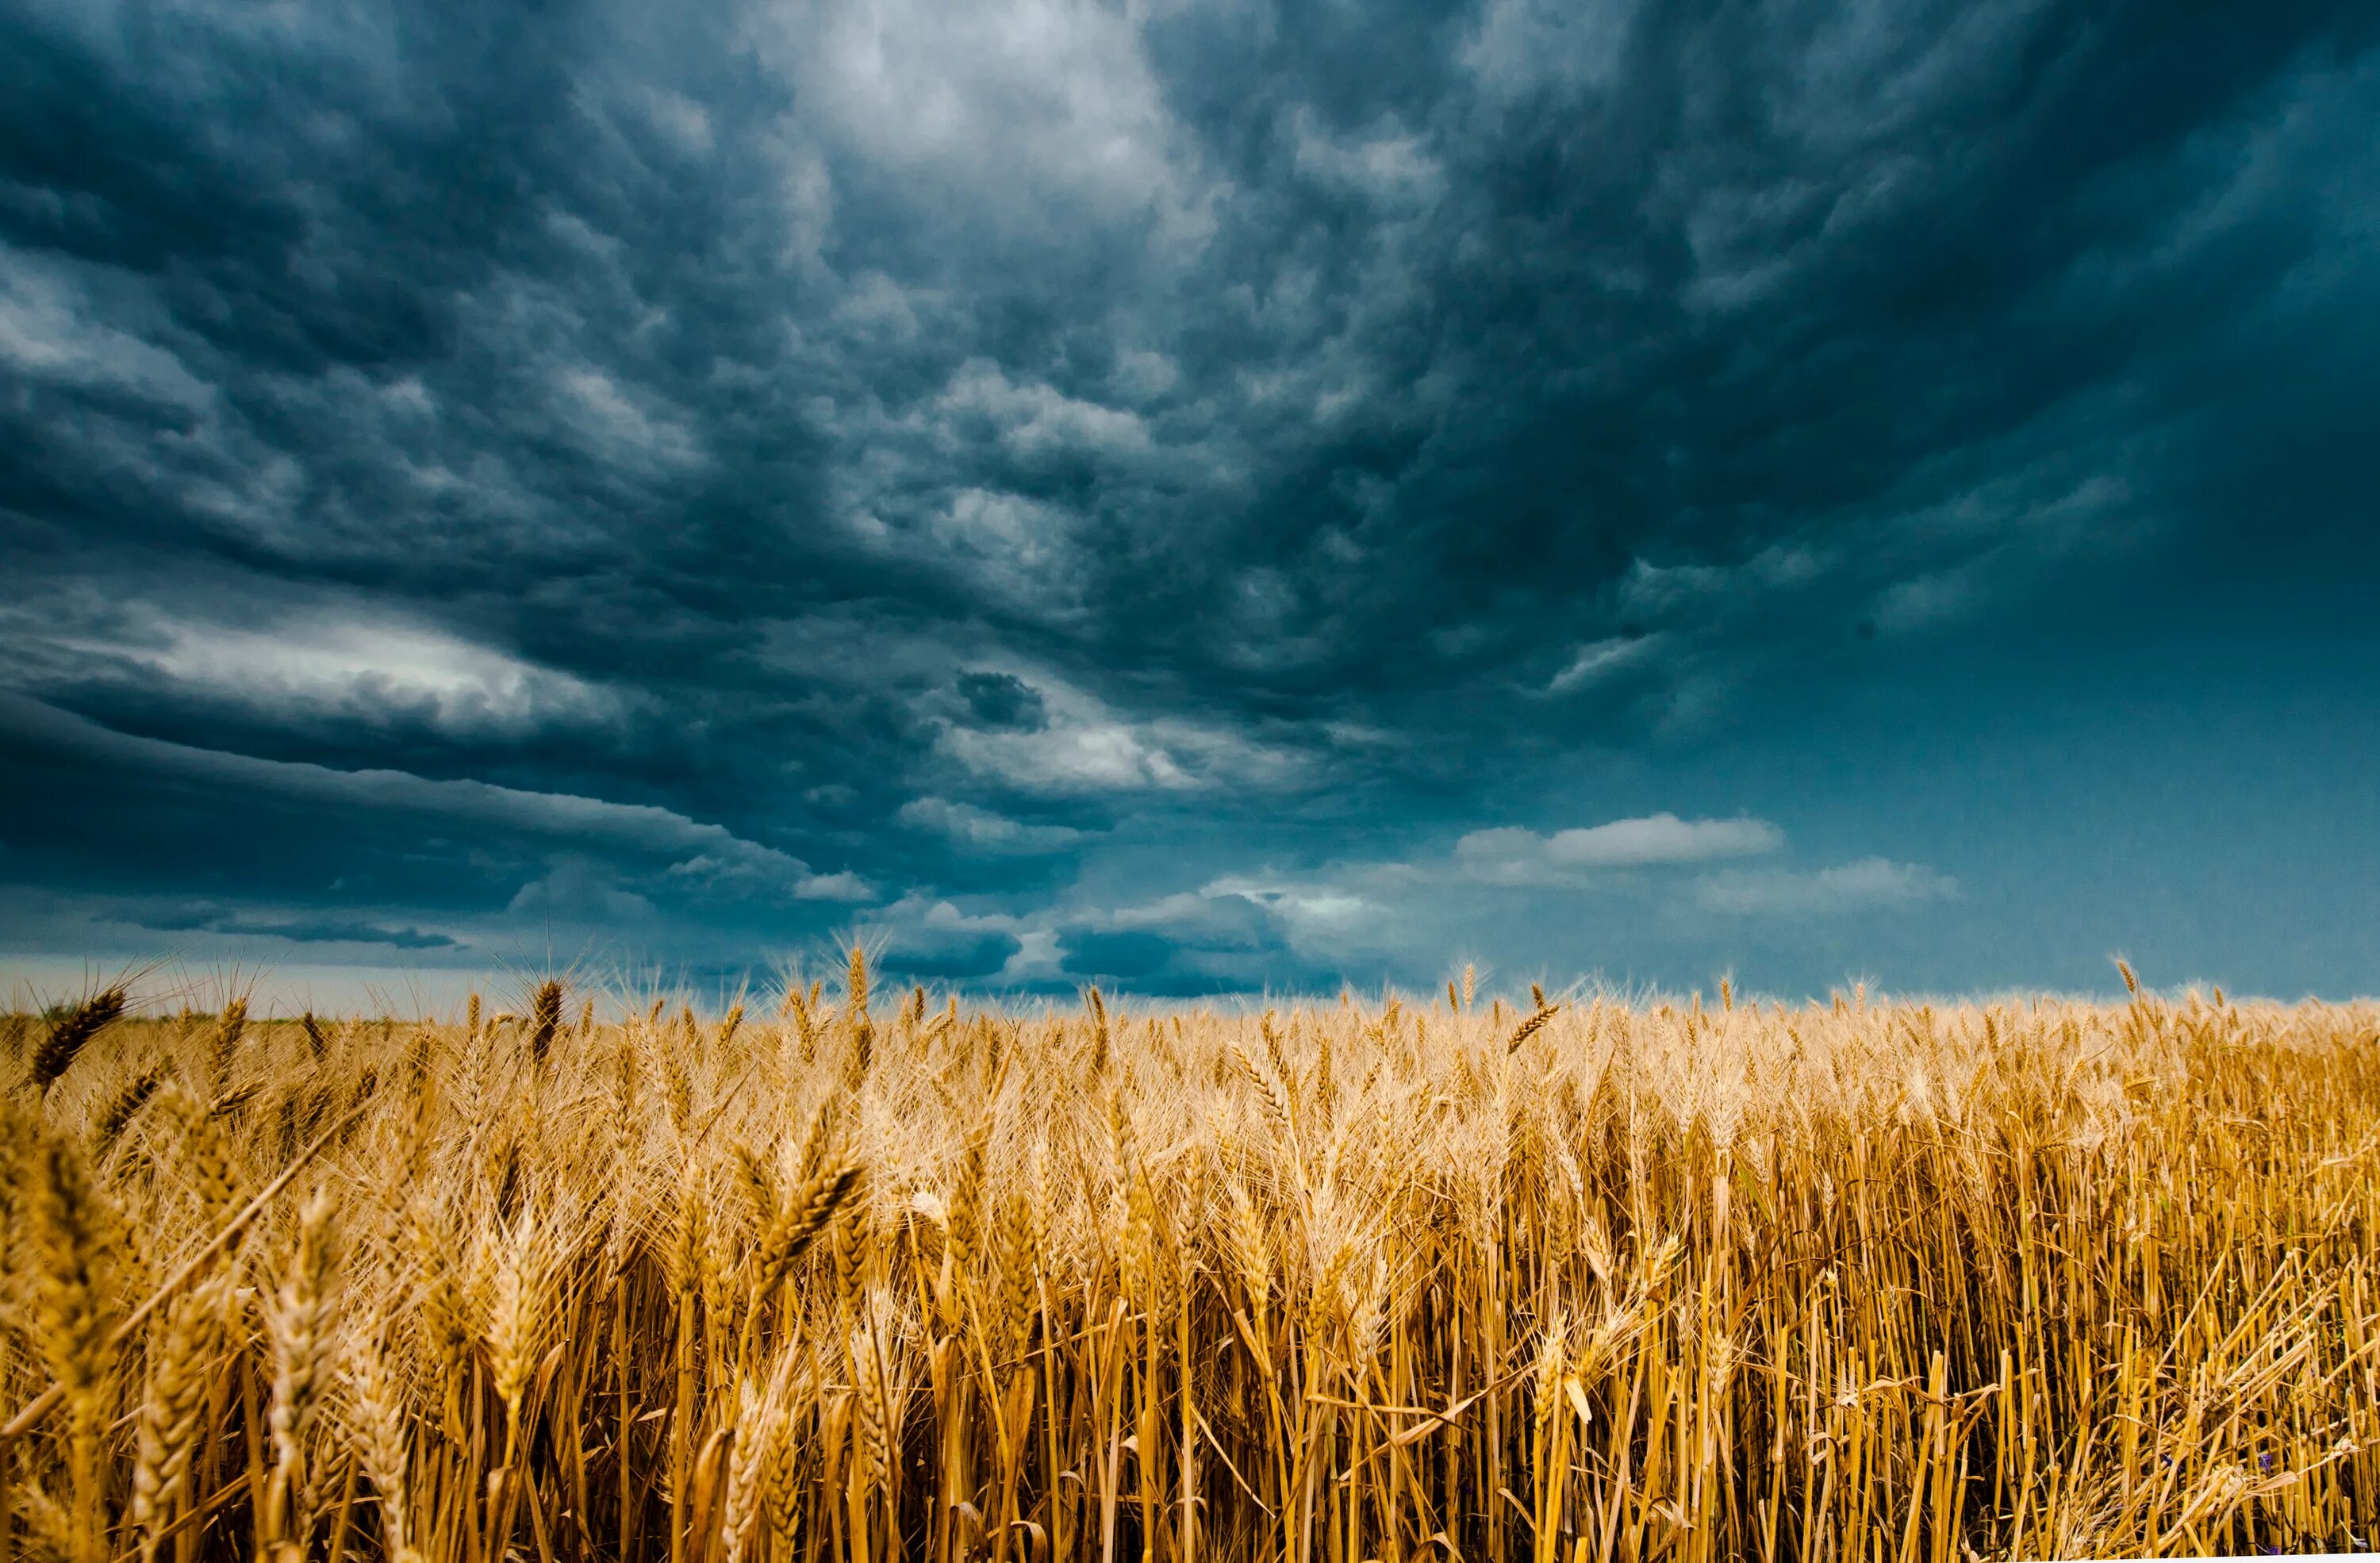 Поле пшеницы. В поле. Небо и поле пшеницы. Пшеничное поле перед грозой.